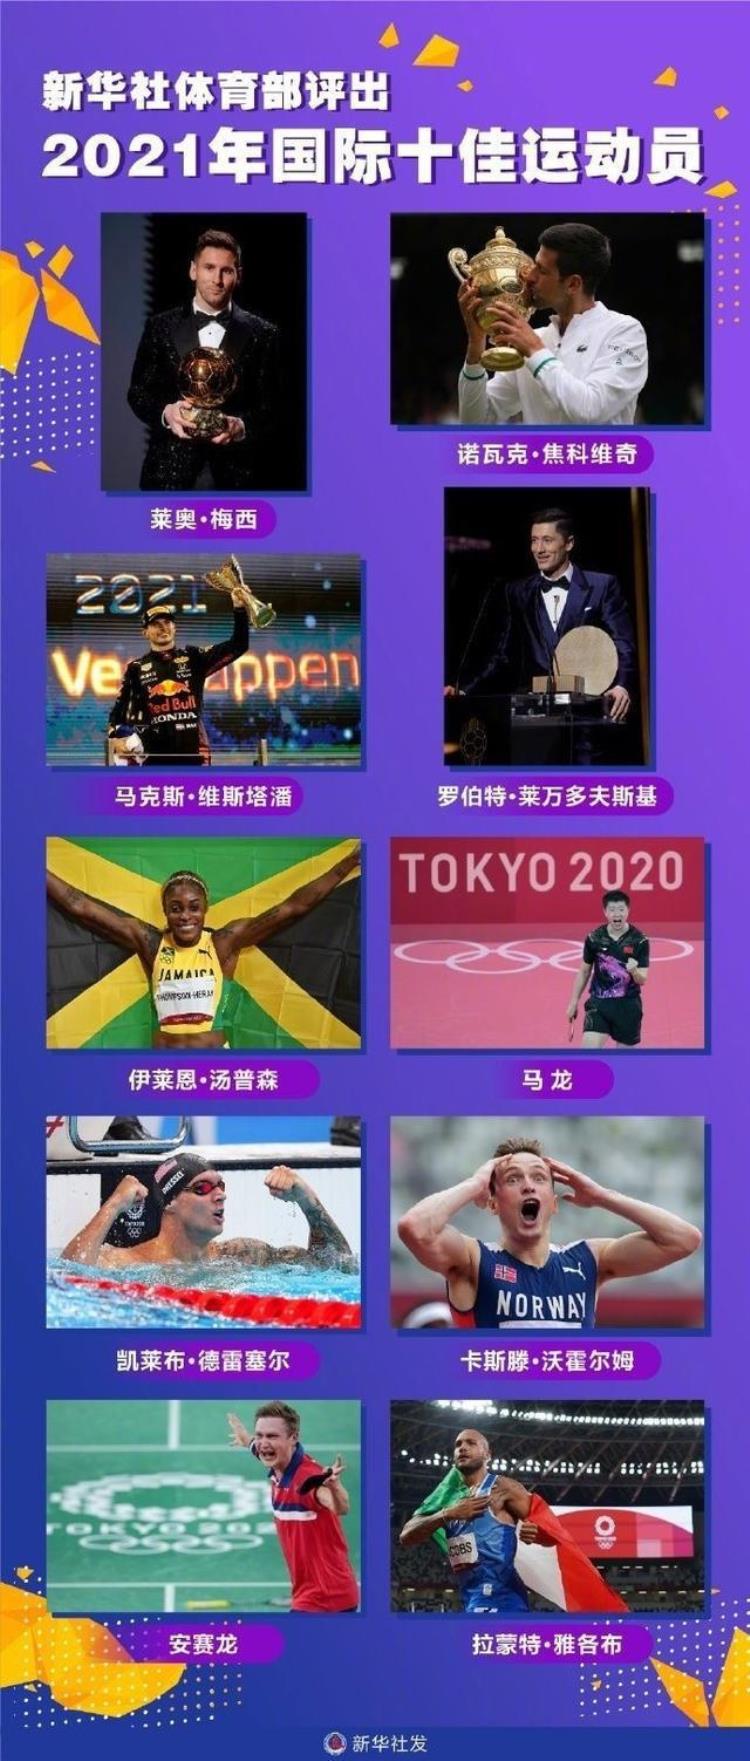 梅西最佳运动员「新华社体育部评出2021年国际十佳运动员梅西莱万入选」